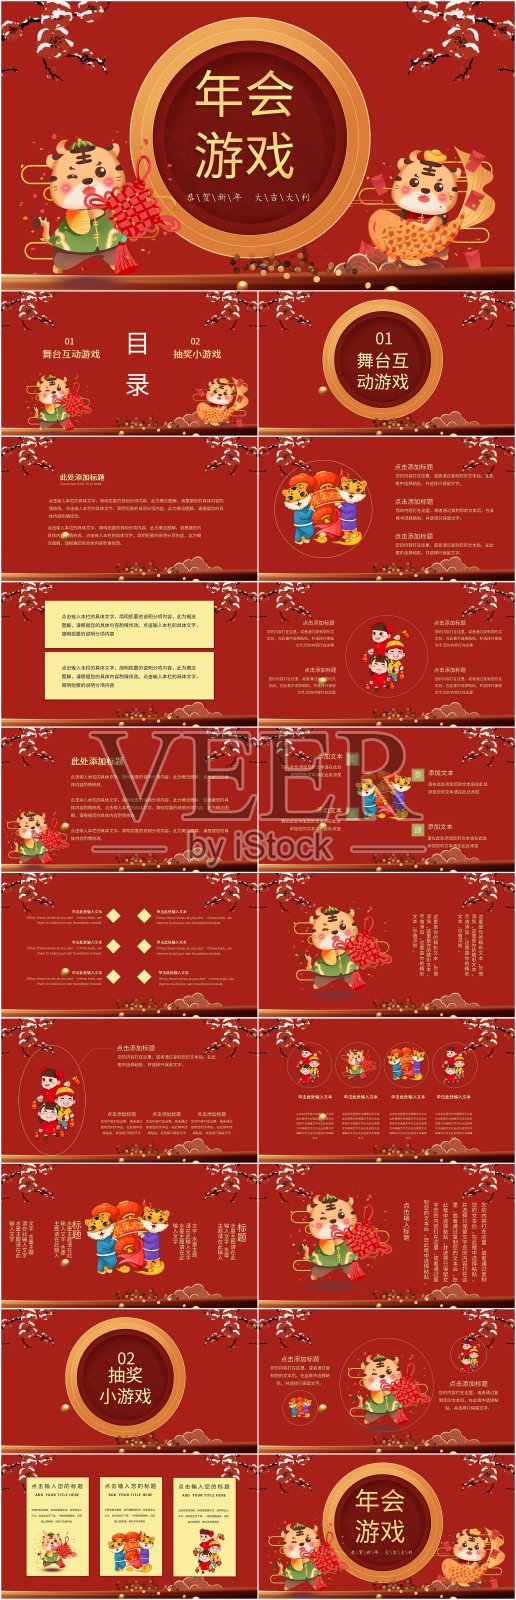 红色中国风年会游戏主题PPT设计模板素材